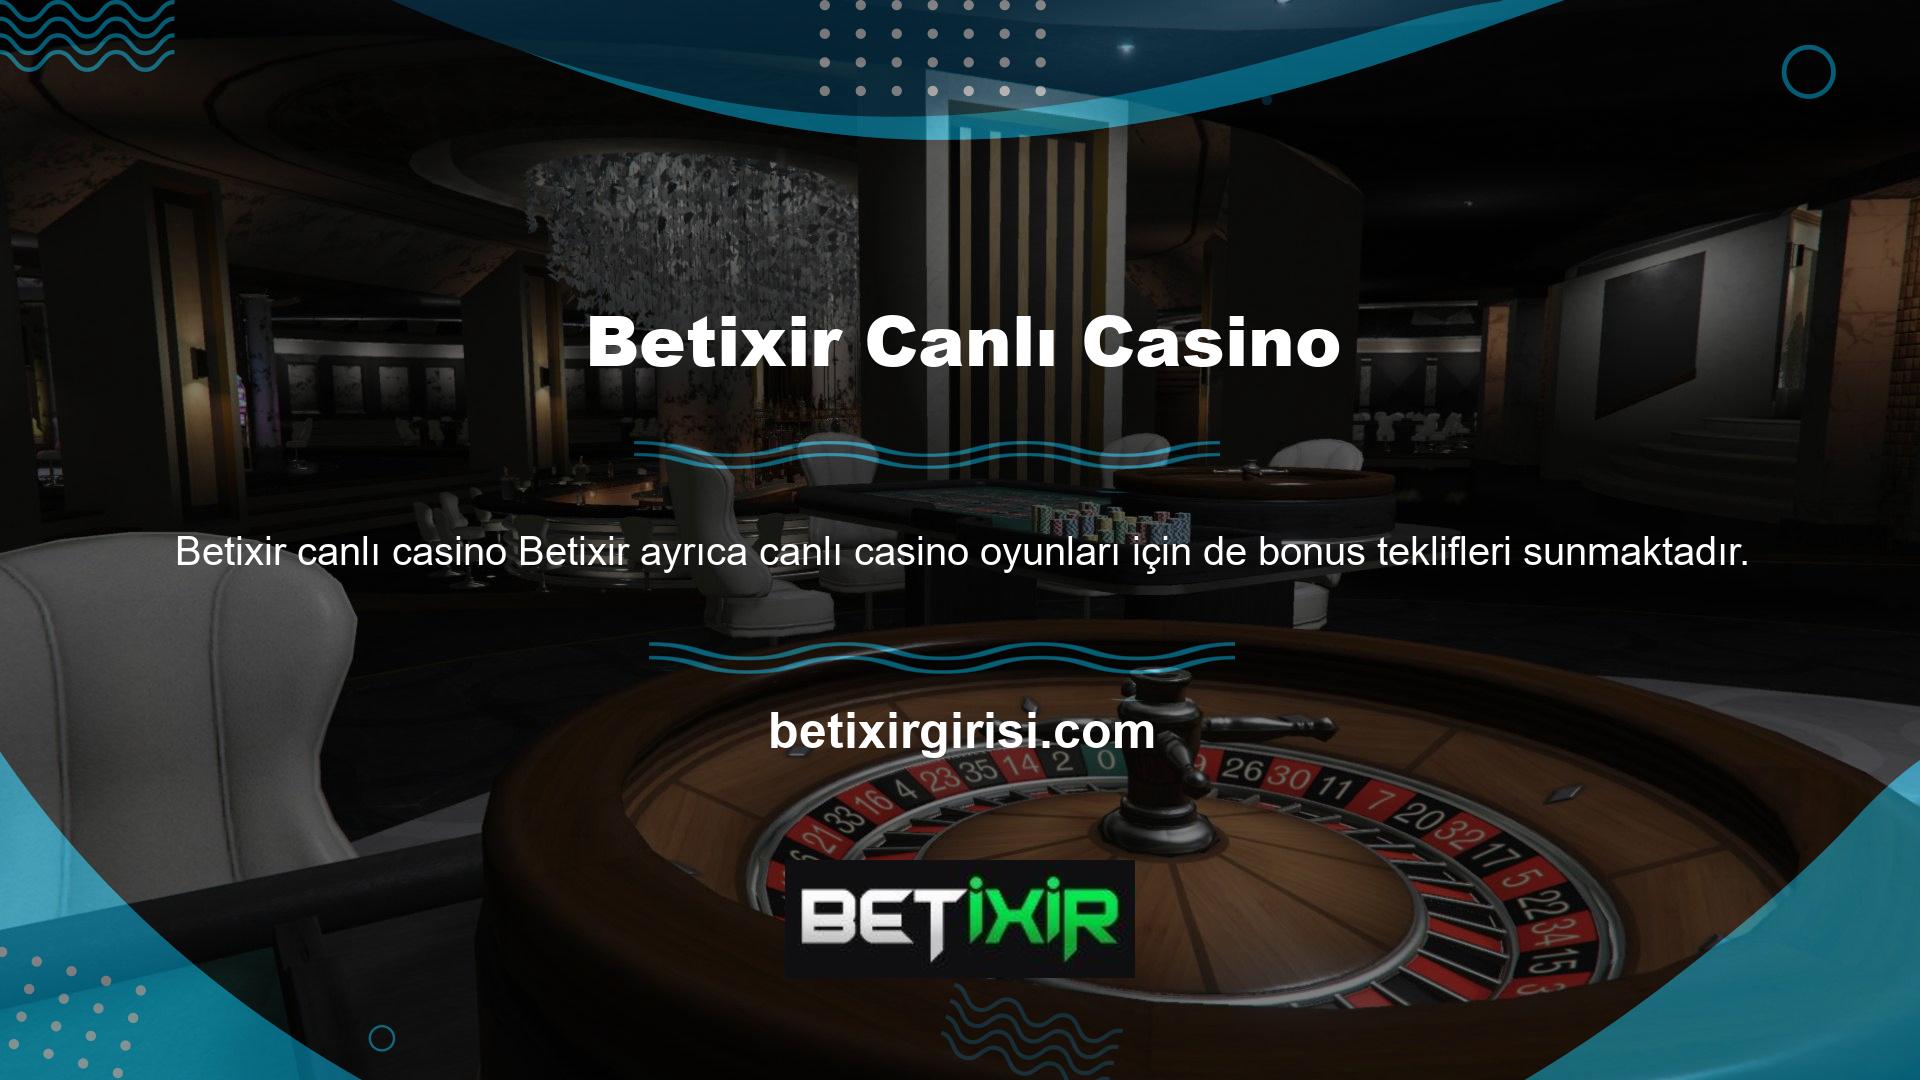 Betixir web sitesindeki canlı casino bonusu kayıt aşamasından itibaren başlamaktadır